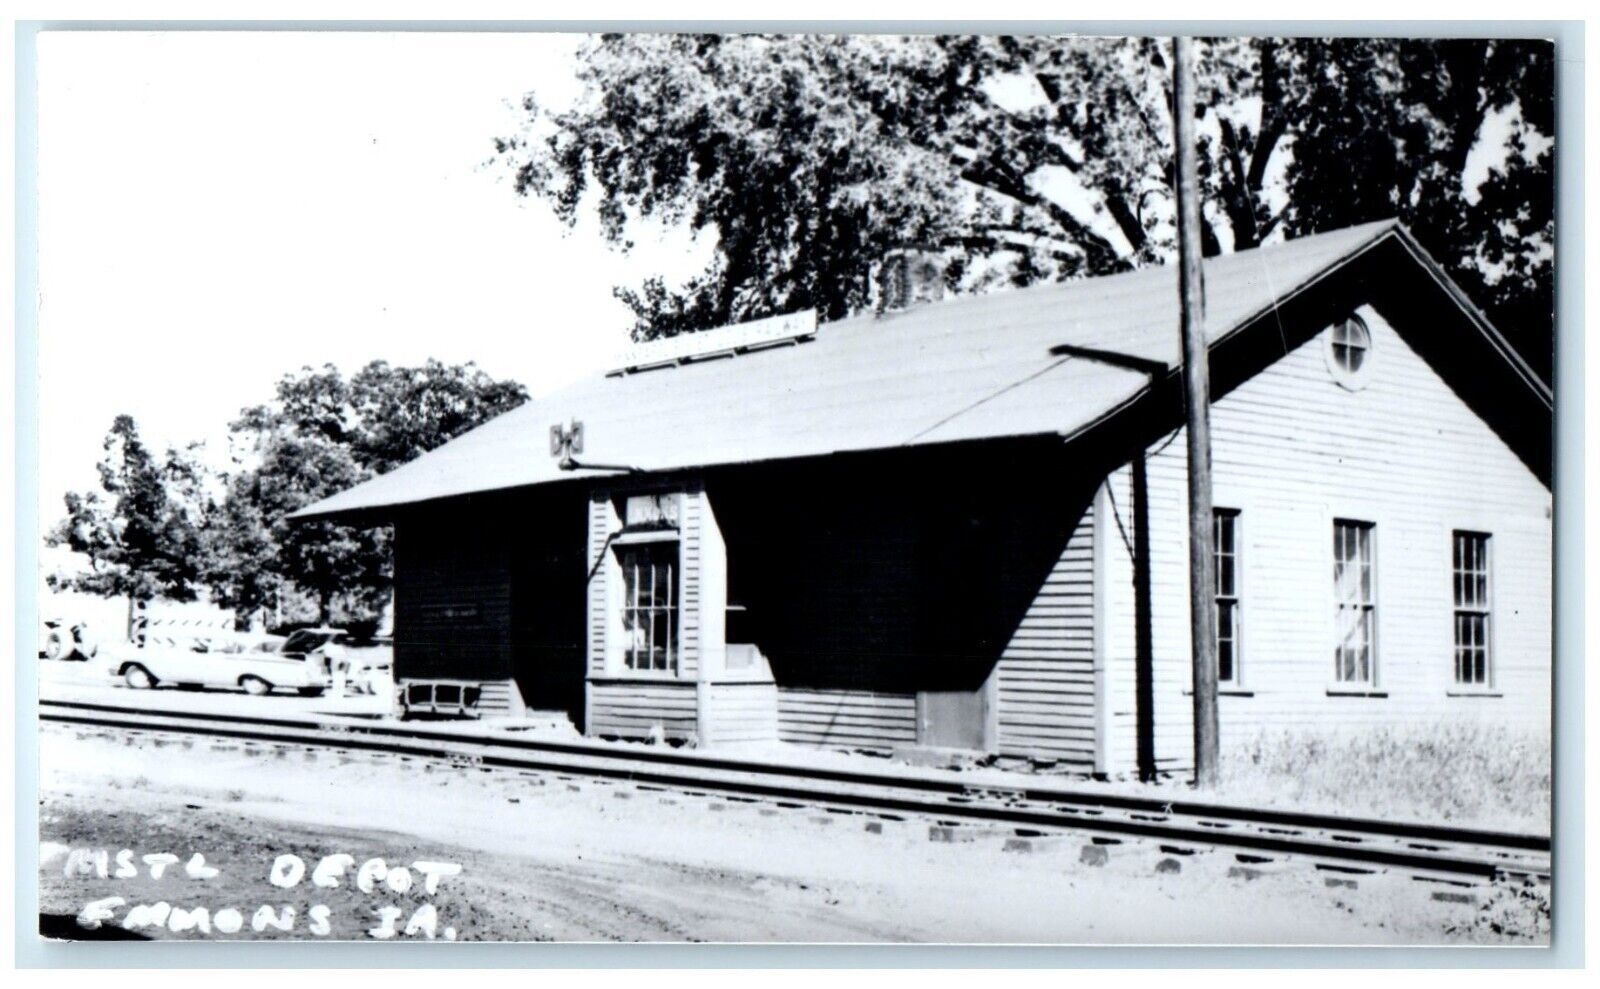 c1960 MSTL Depot Emmons Iowa IA Railroad Train Depot Station RPPC Photo Postcard